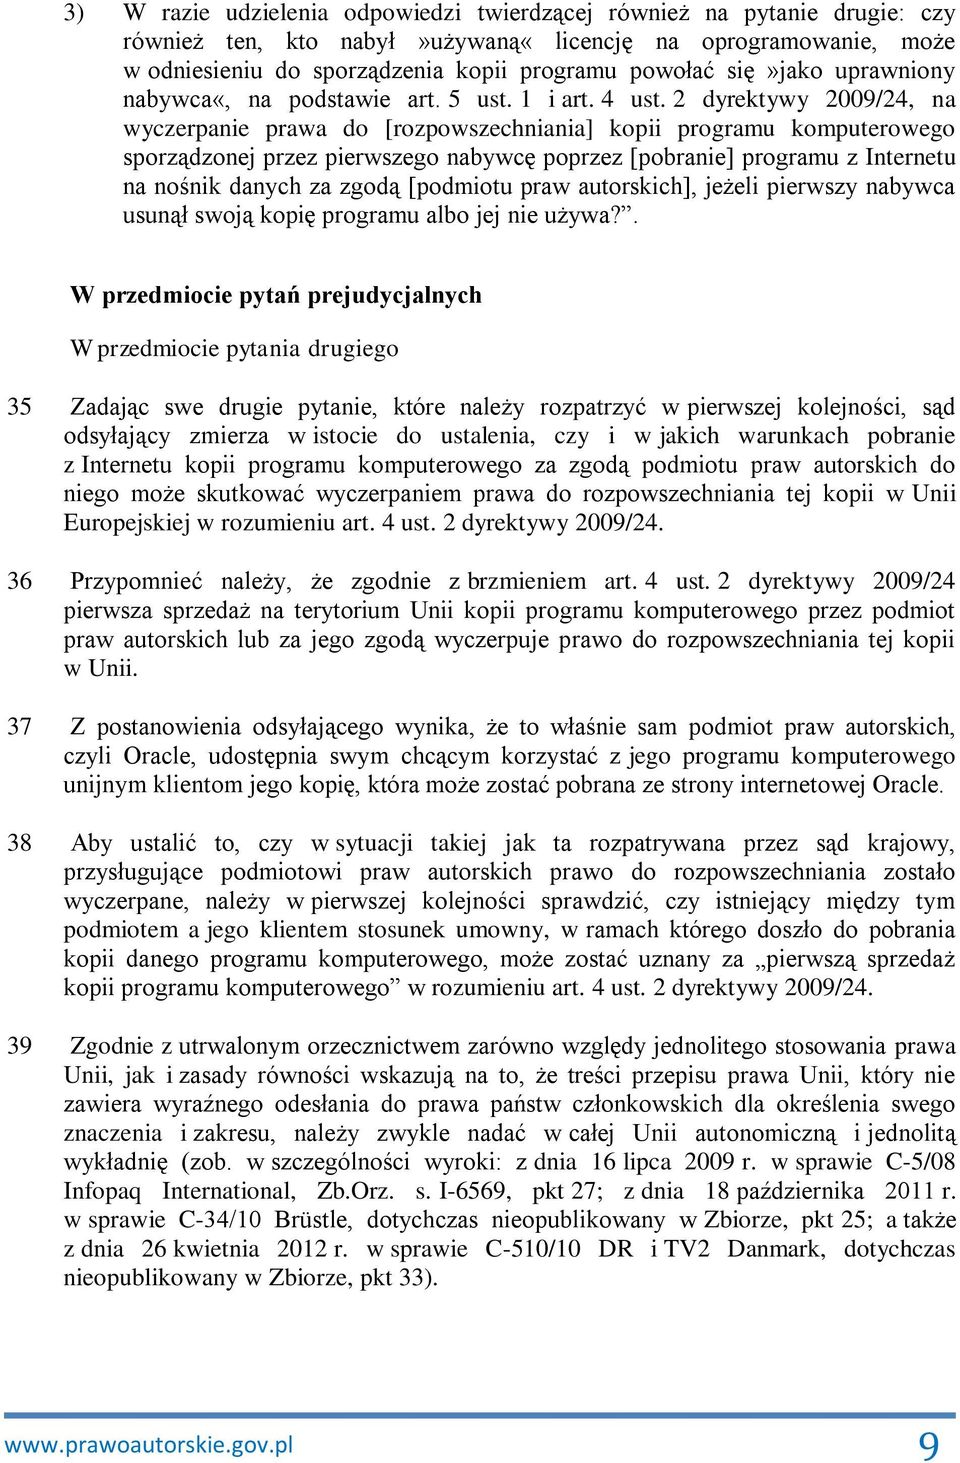 2 dyrektywy 2009/24, na wyczerpanie prawa do [rozpowszechniania] kopii programu komputerowego sporządzonej przez pierwszego nabywcę poprzez [pobranie] programu z Internetu na nośnik danych za zgodą